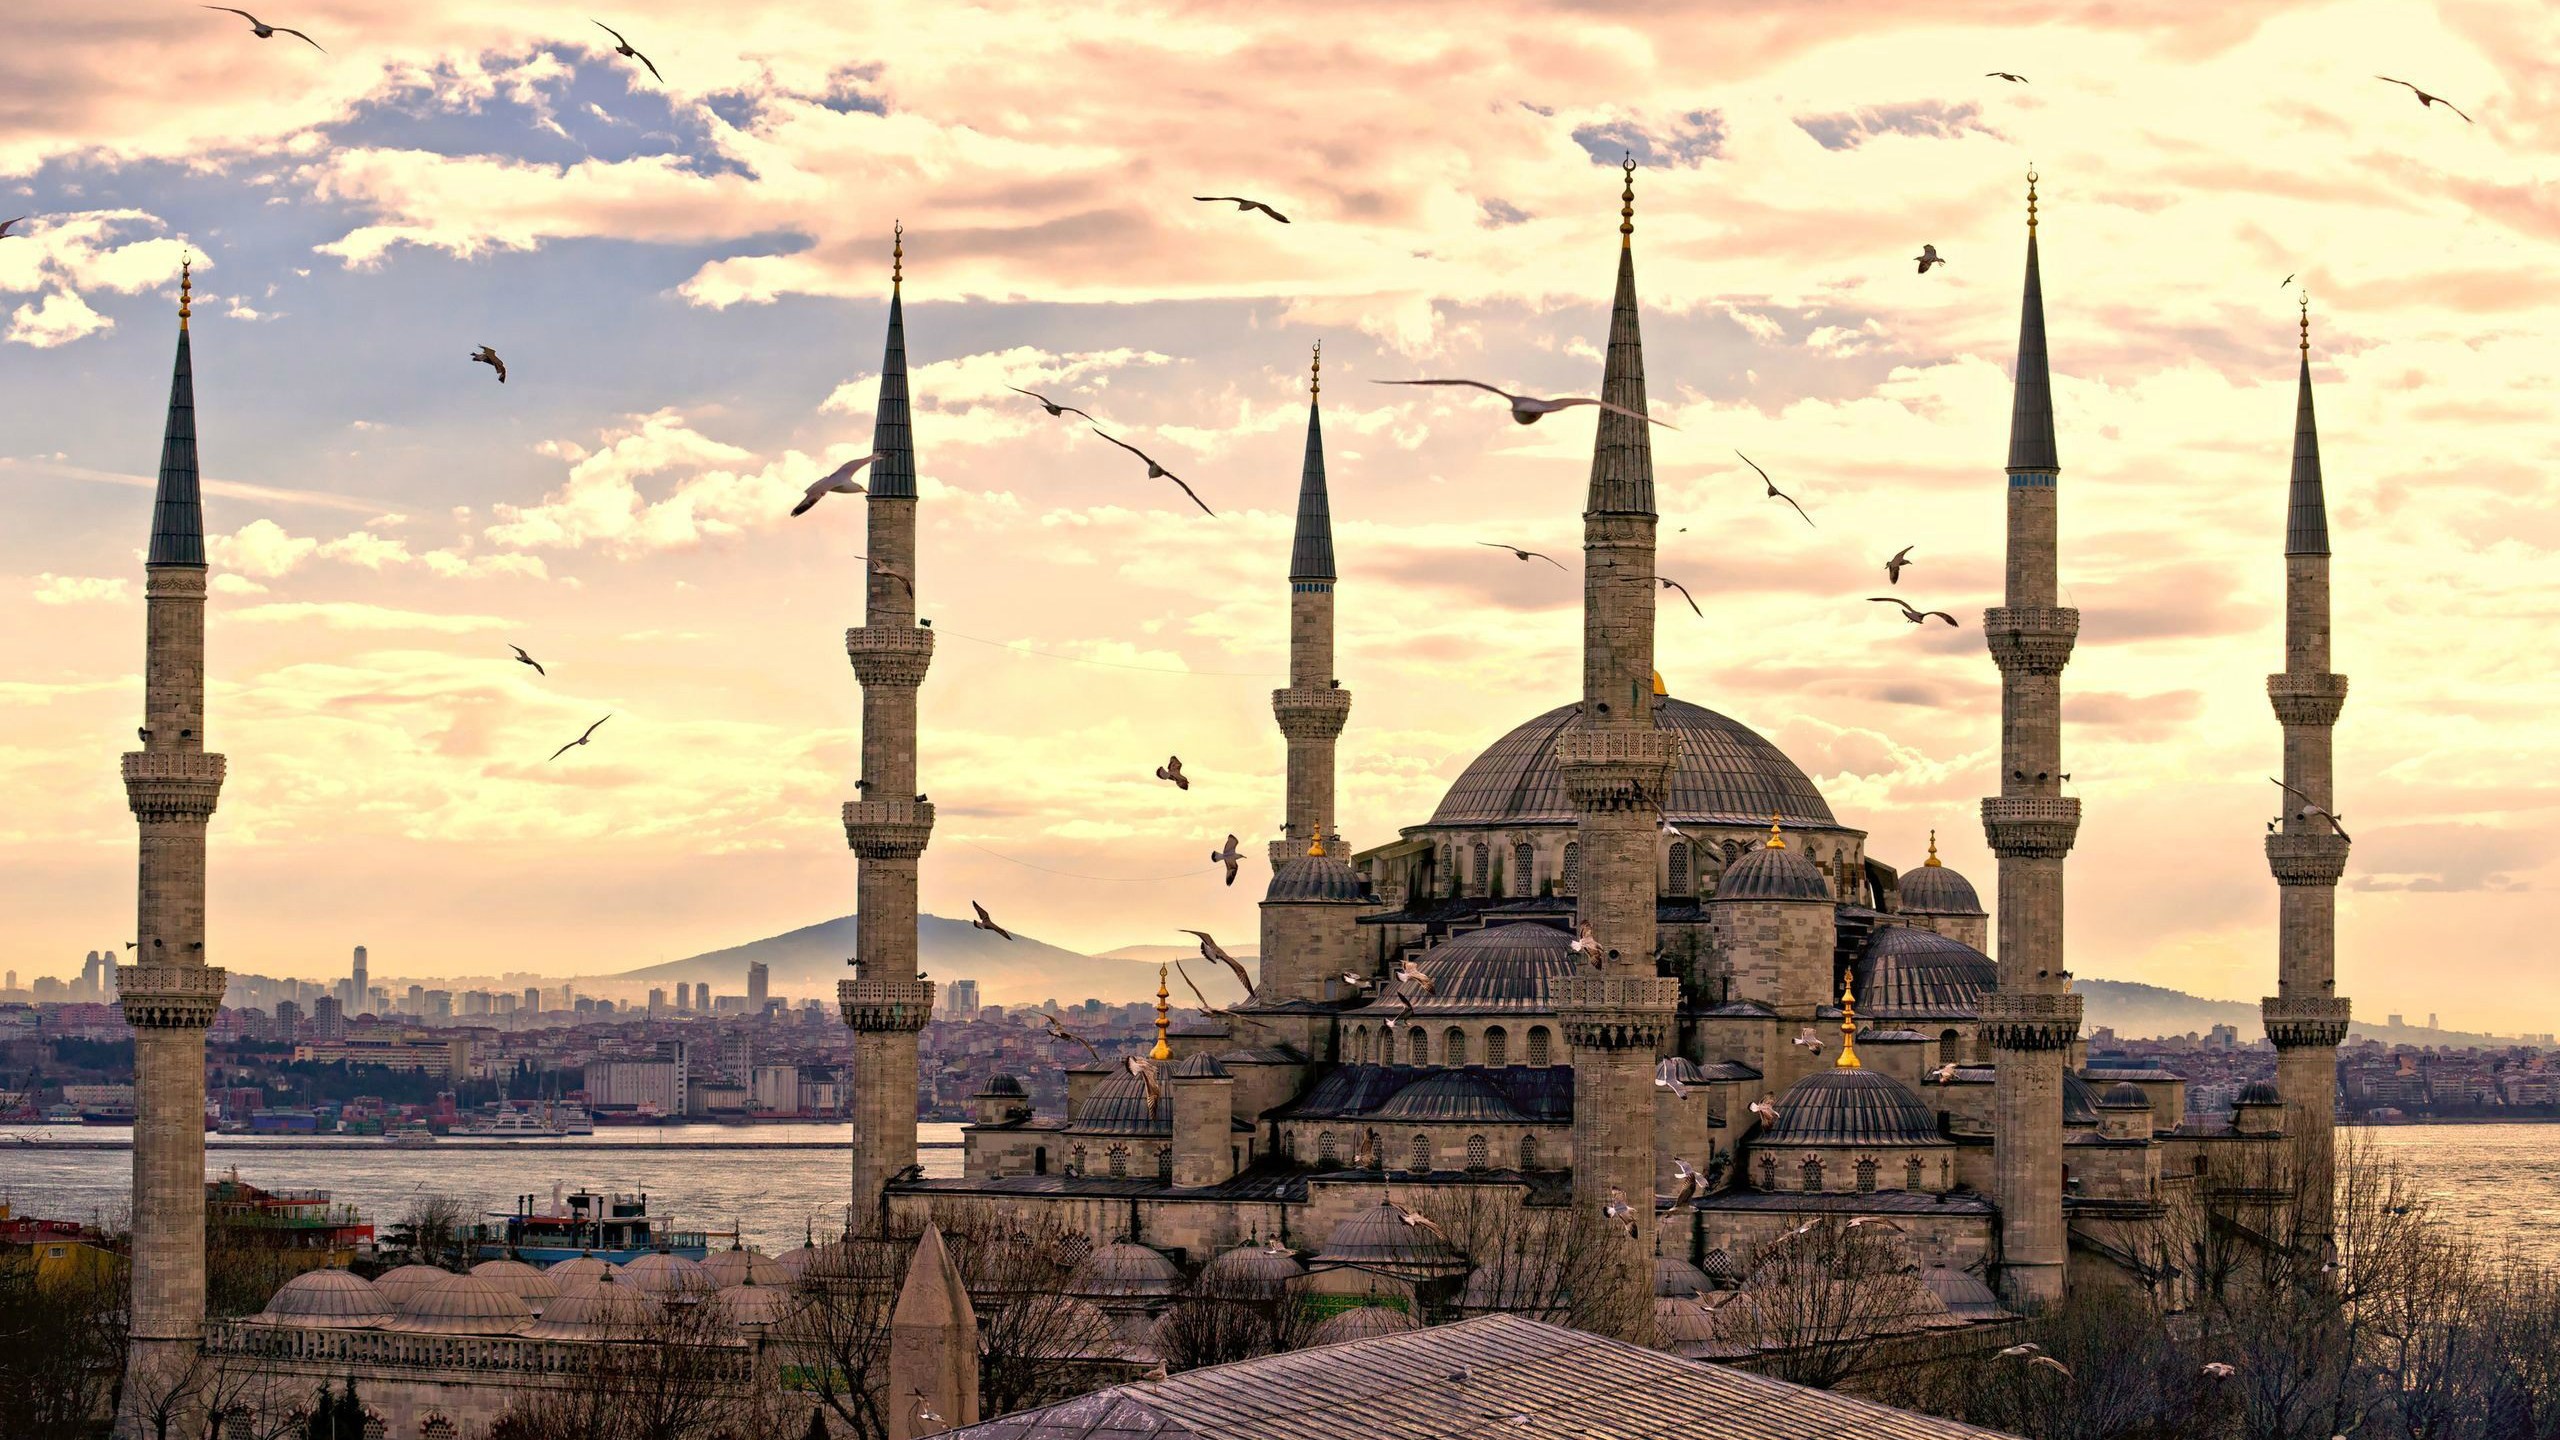 General 2560x1440 mosque Turkey Sultan Ahmed Mosque building birds sky